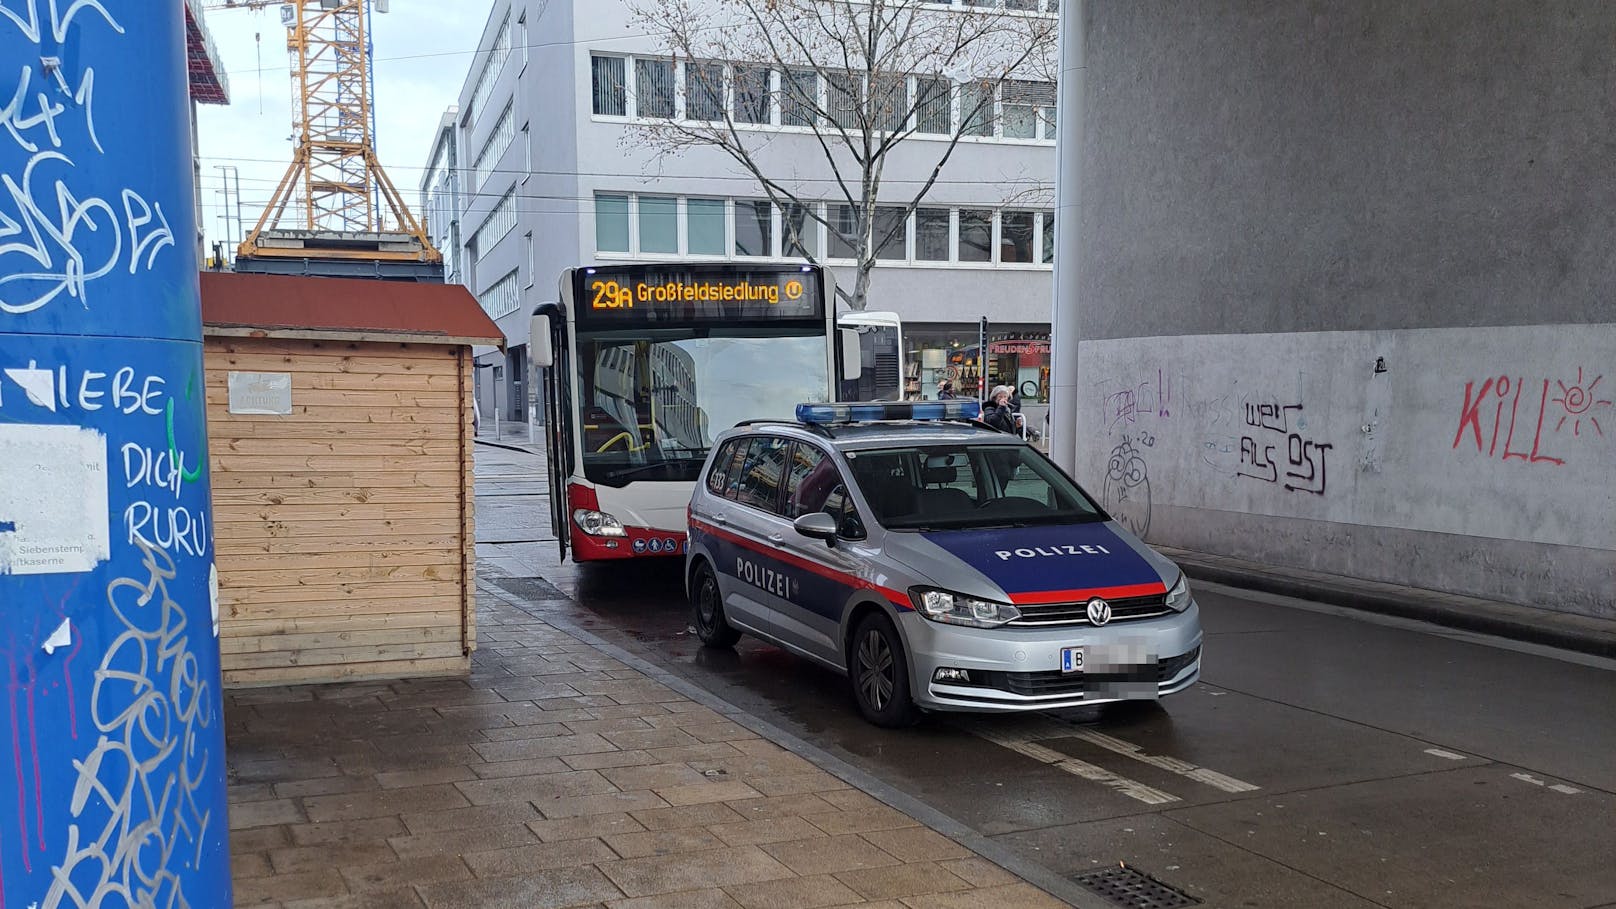 Ein geparktes Polizeiauto sorgte am Samstagmorgen für ein Öffi-Chaos in Wien-Floridsdorf.